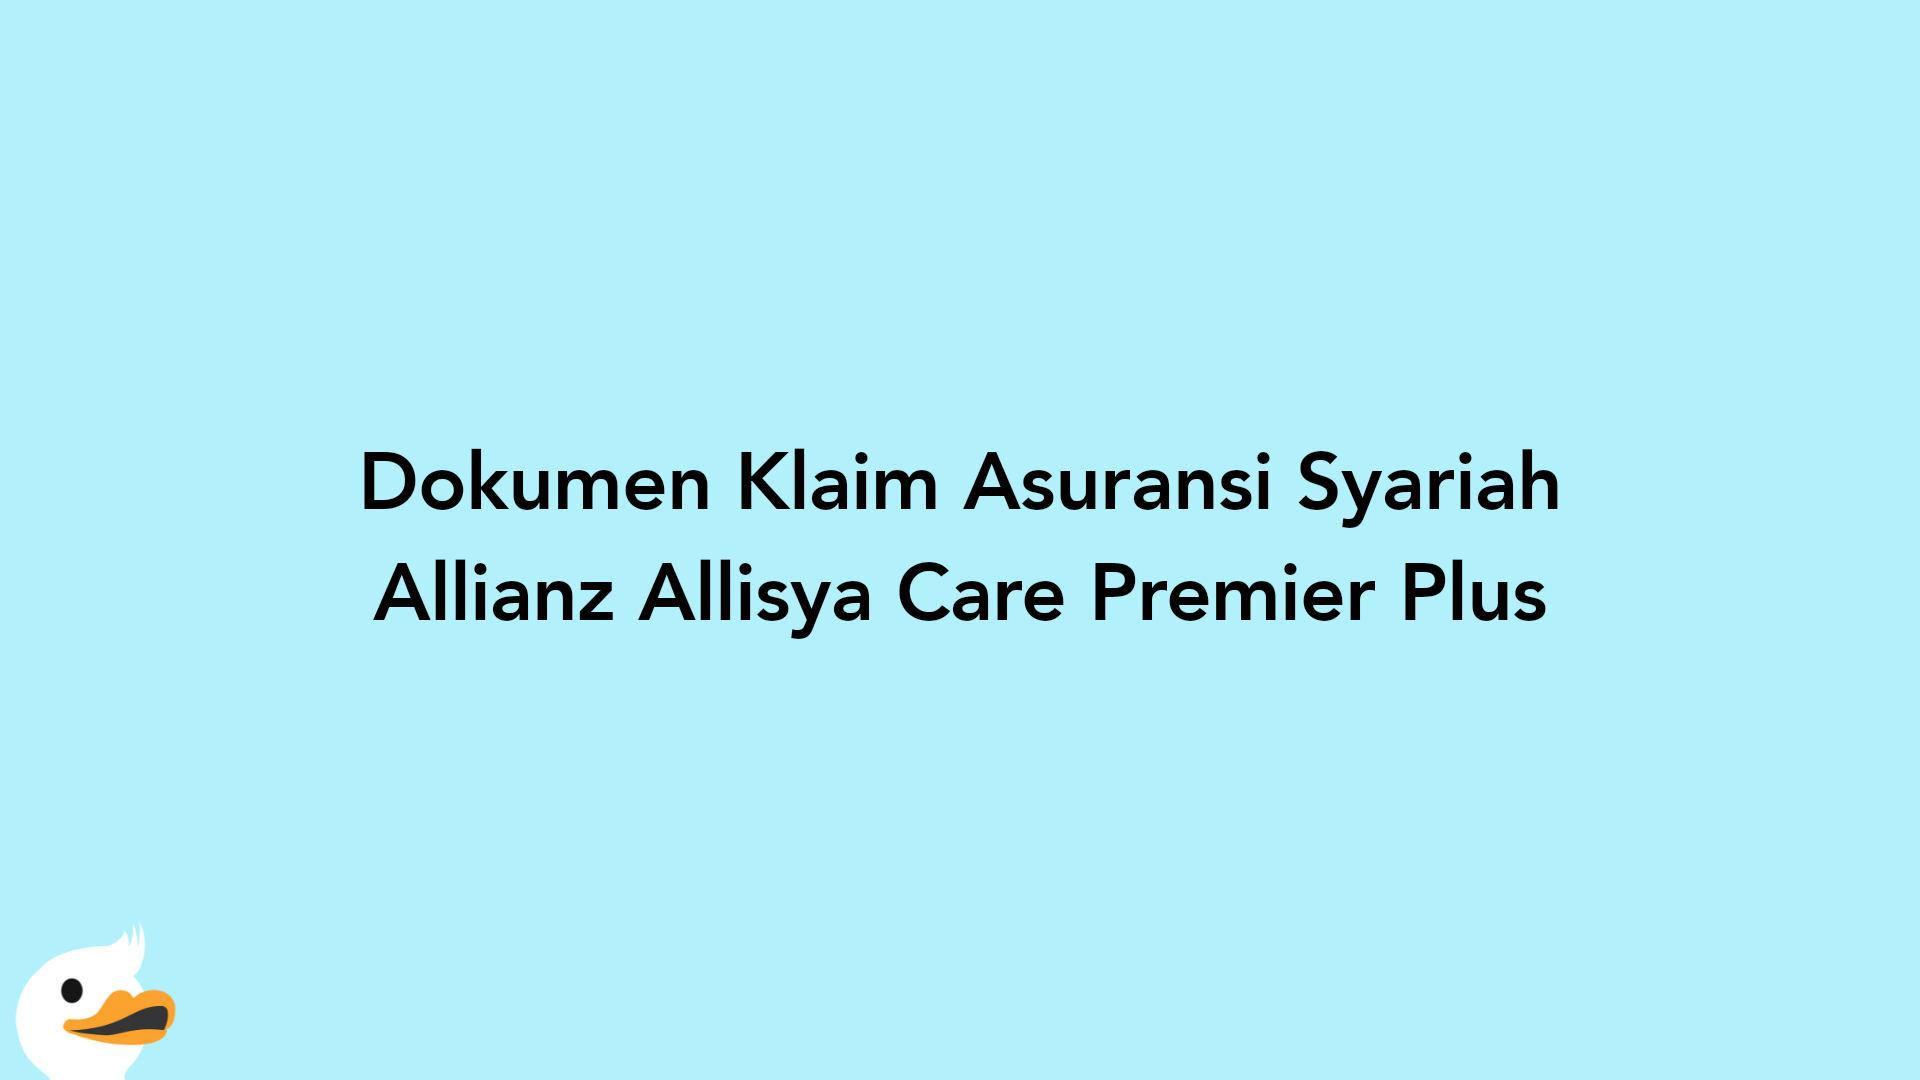 Dokumen Klaim Asuransi Syariah Allianz Allisya Care Premier Plus